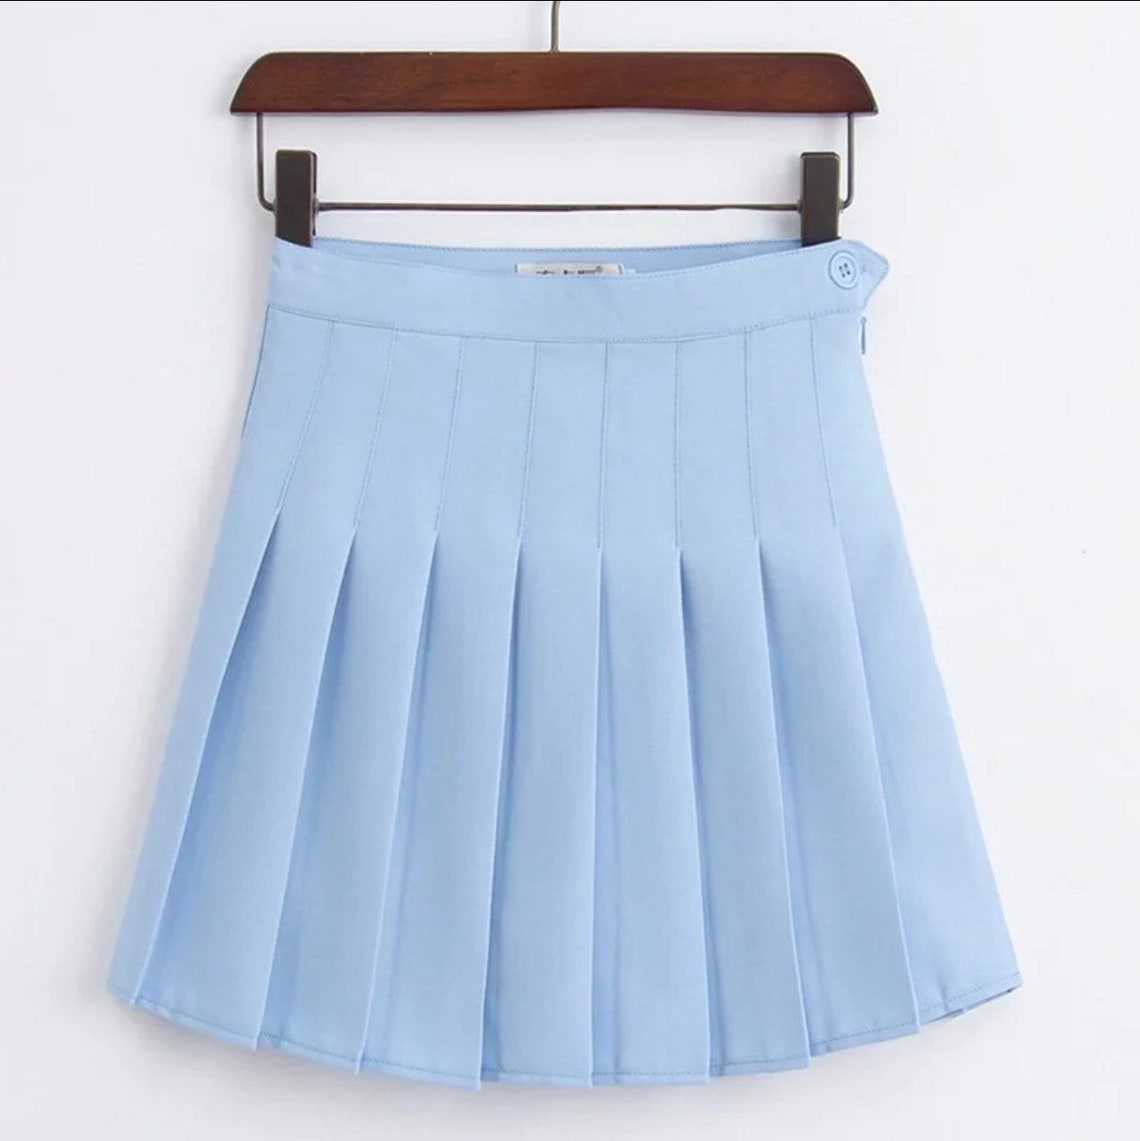 Pleated Tennis Skirt Uniform skirt Badminton skirt | Etsy